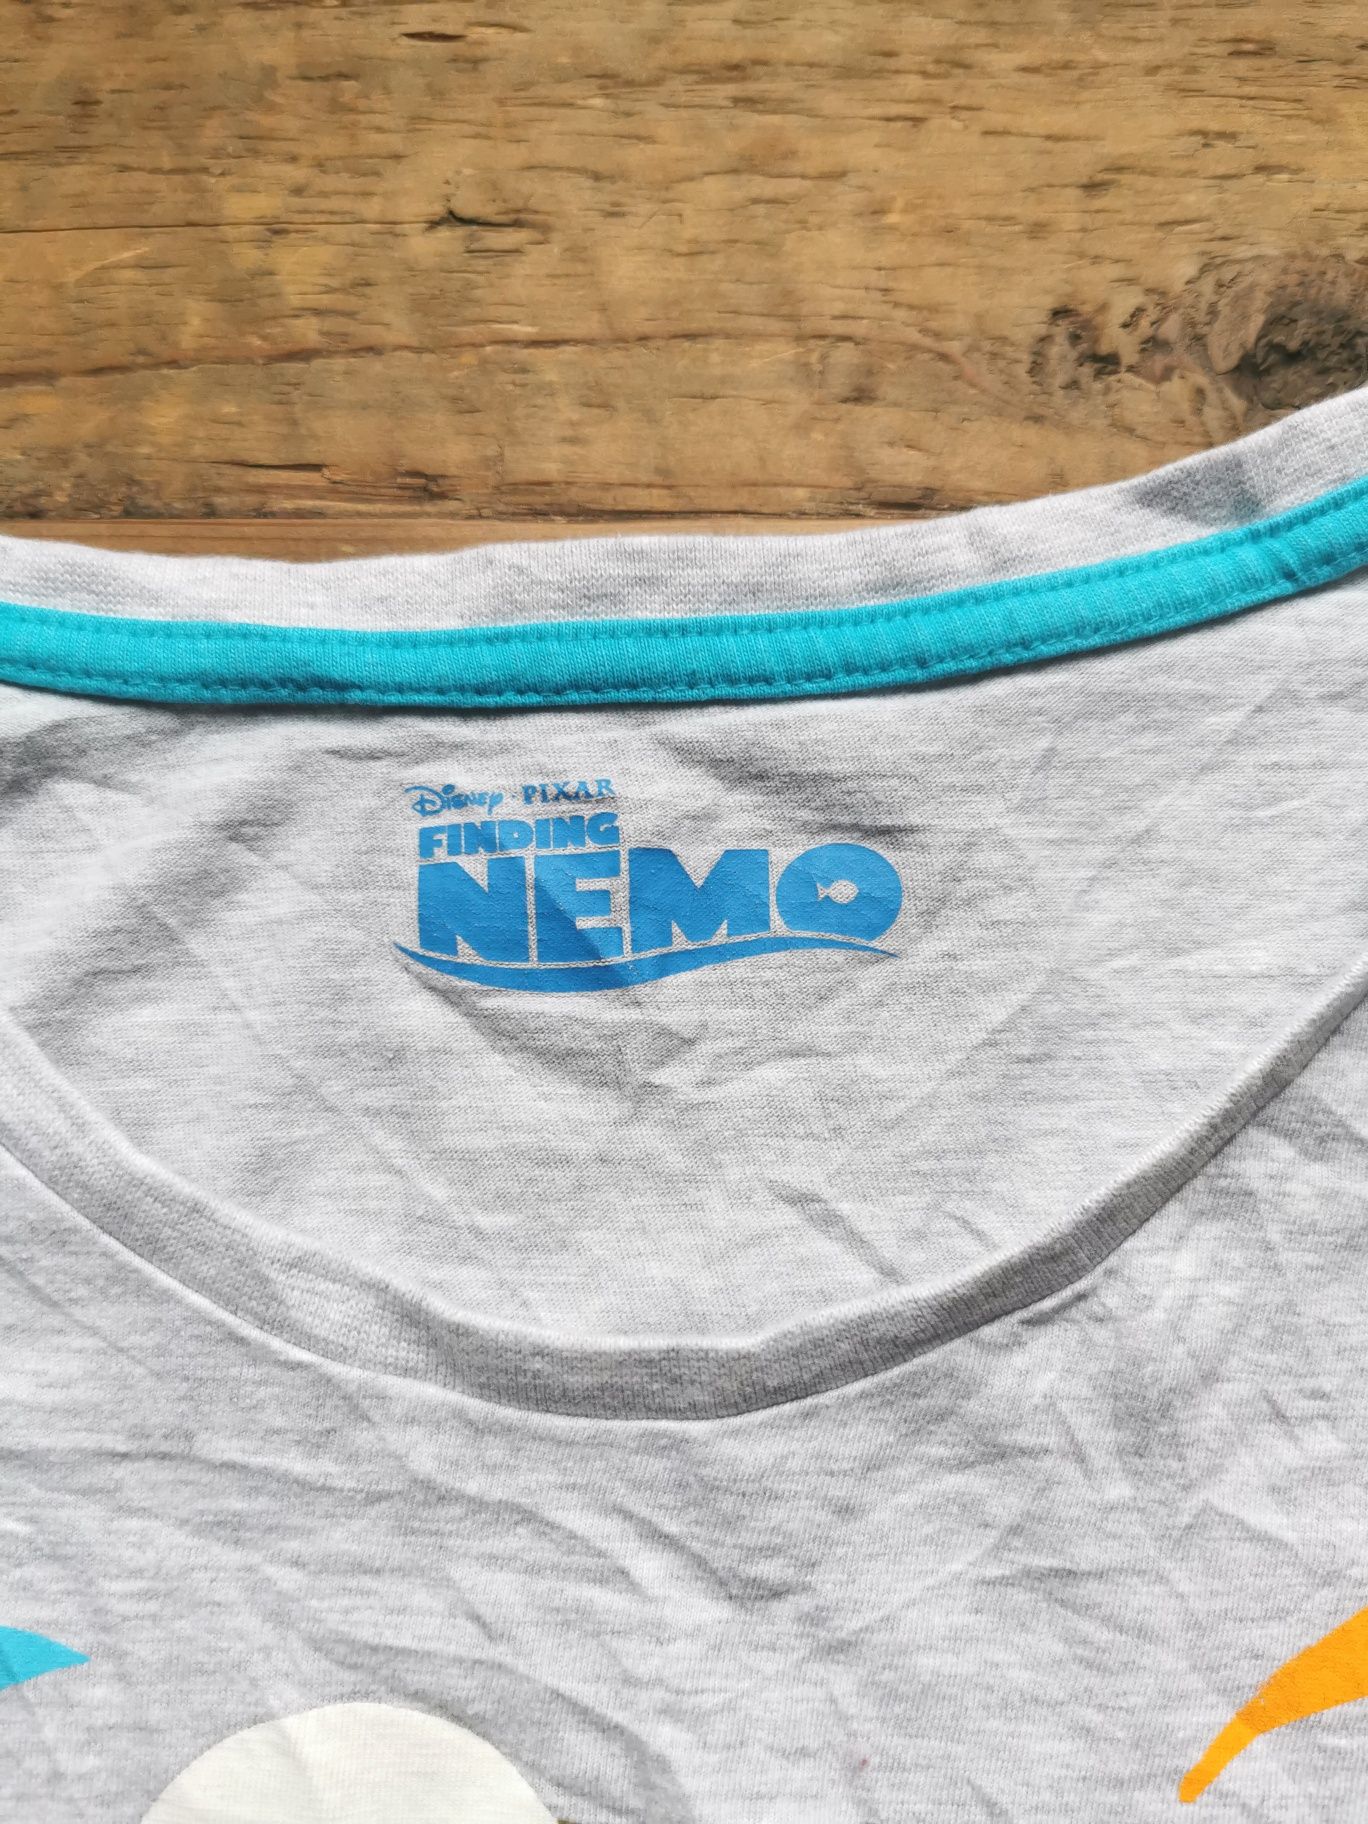 T-shirt szary z Nemo, Disney, rozmiar S-M